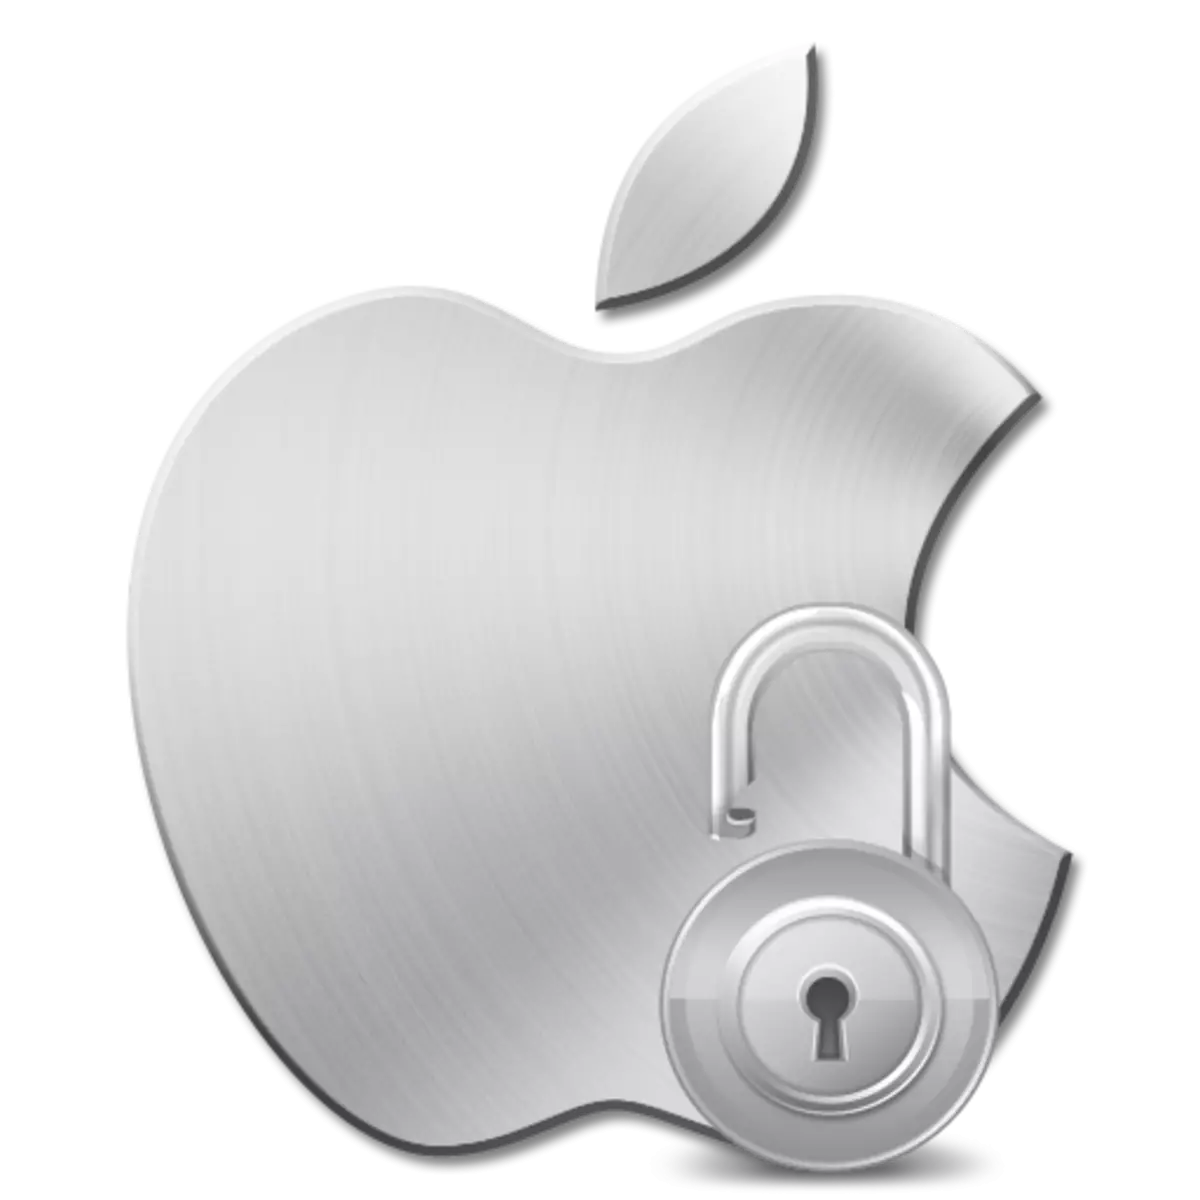 Apple ID нь аюулгүй байдлын үүднээс хаагдсан: юу хийх вэ?